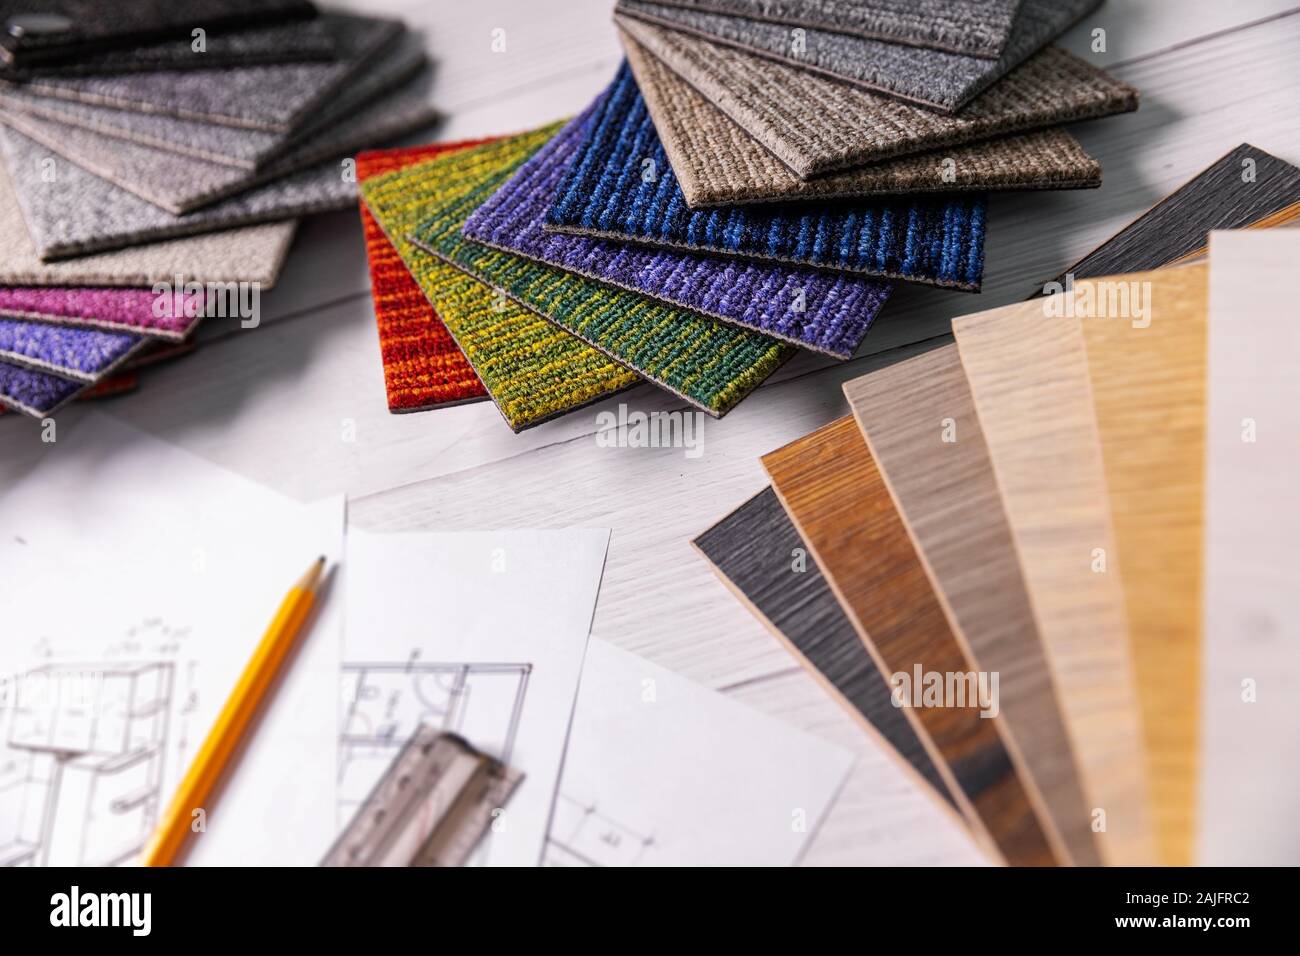 Bodenbeläge und Möbel Materialien - Bodenbelag und Holzlaminat Proben für Interior Design Projekt Stockfoto